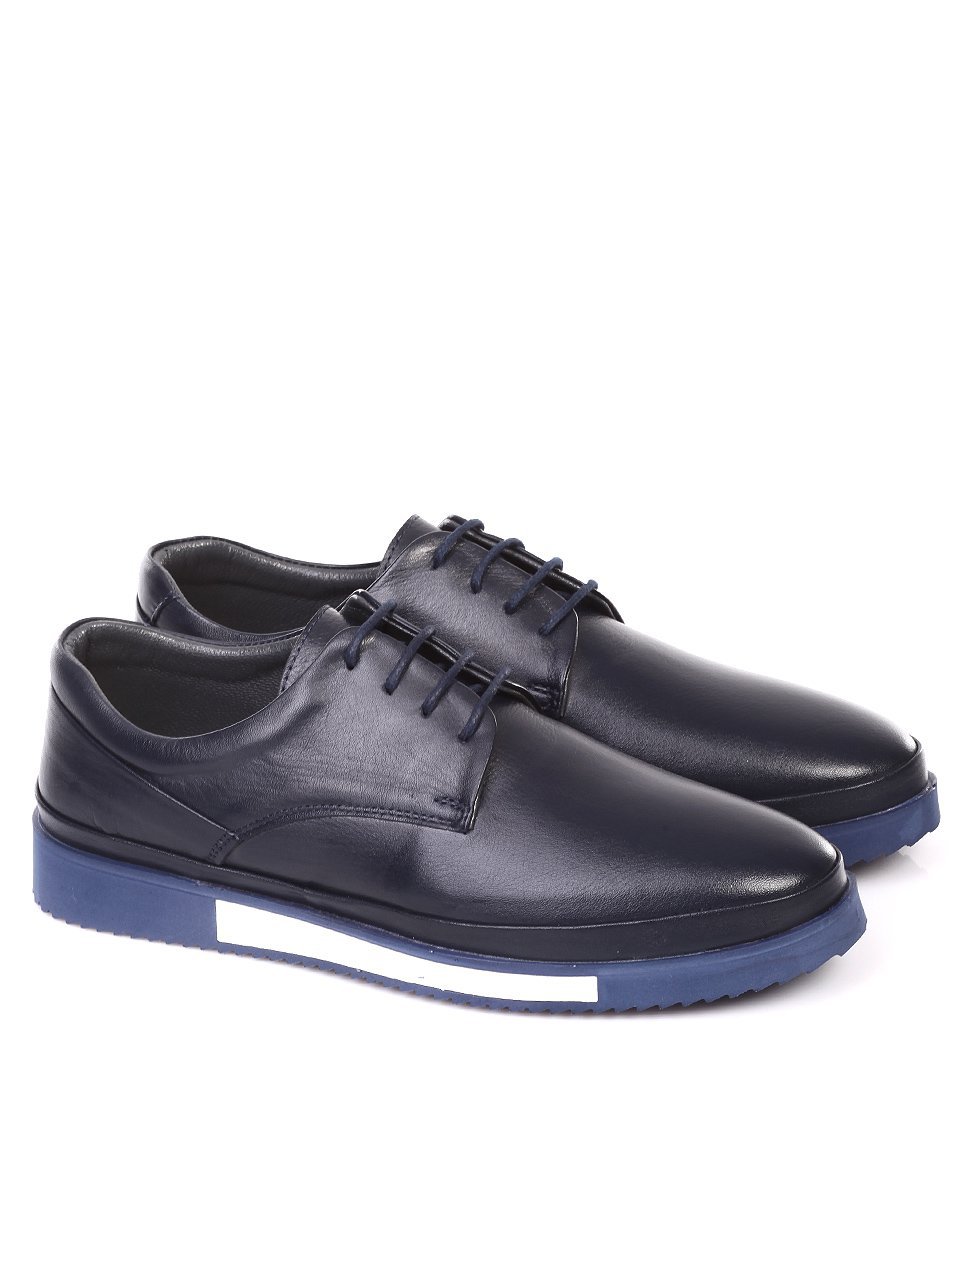 Ежедневни мъжки обувки от естествена кожа в синьо 7AT-18558 dk.blue